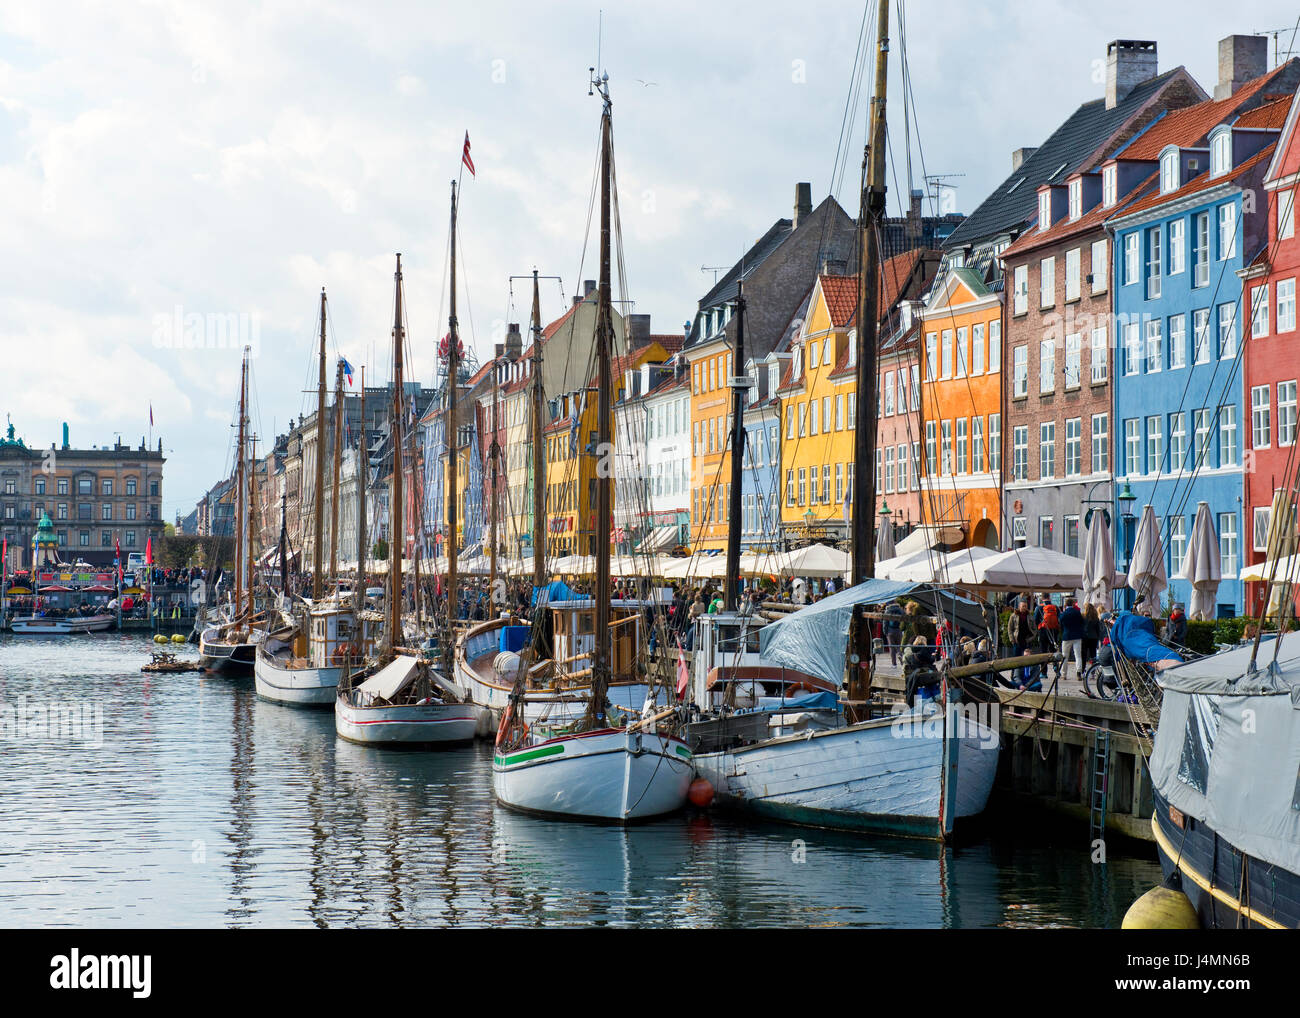 Busy Kai von Nyhavn in Kopenhagen, Dänemark. Touristen und Einheimische die farbenfrohe Architektur, Bars, Restaurants und Boote. Stockfoto